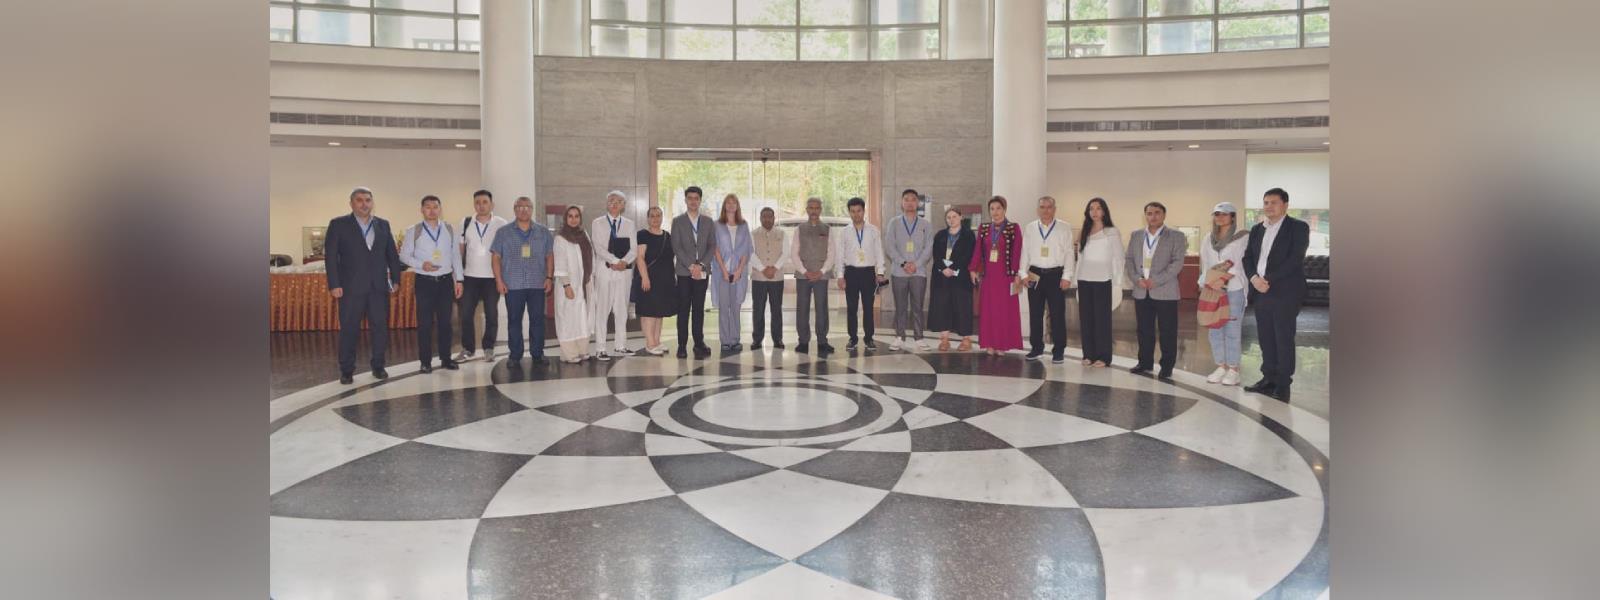 विदेश मंत्री, डॉ. एस. जयशंकर की यूरेशिआ के 10 देशों से भारत इमर्शन यात्रा पर आए पत्रकारों से नई दिल्ली में मुलाकात 